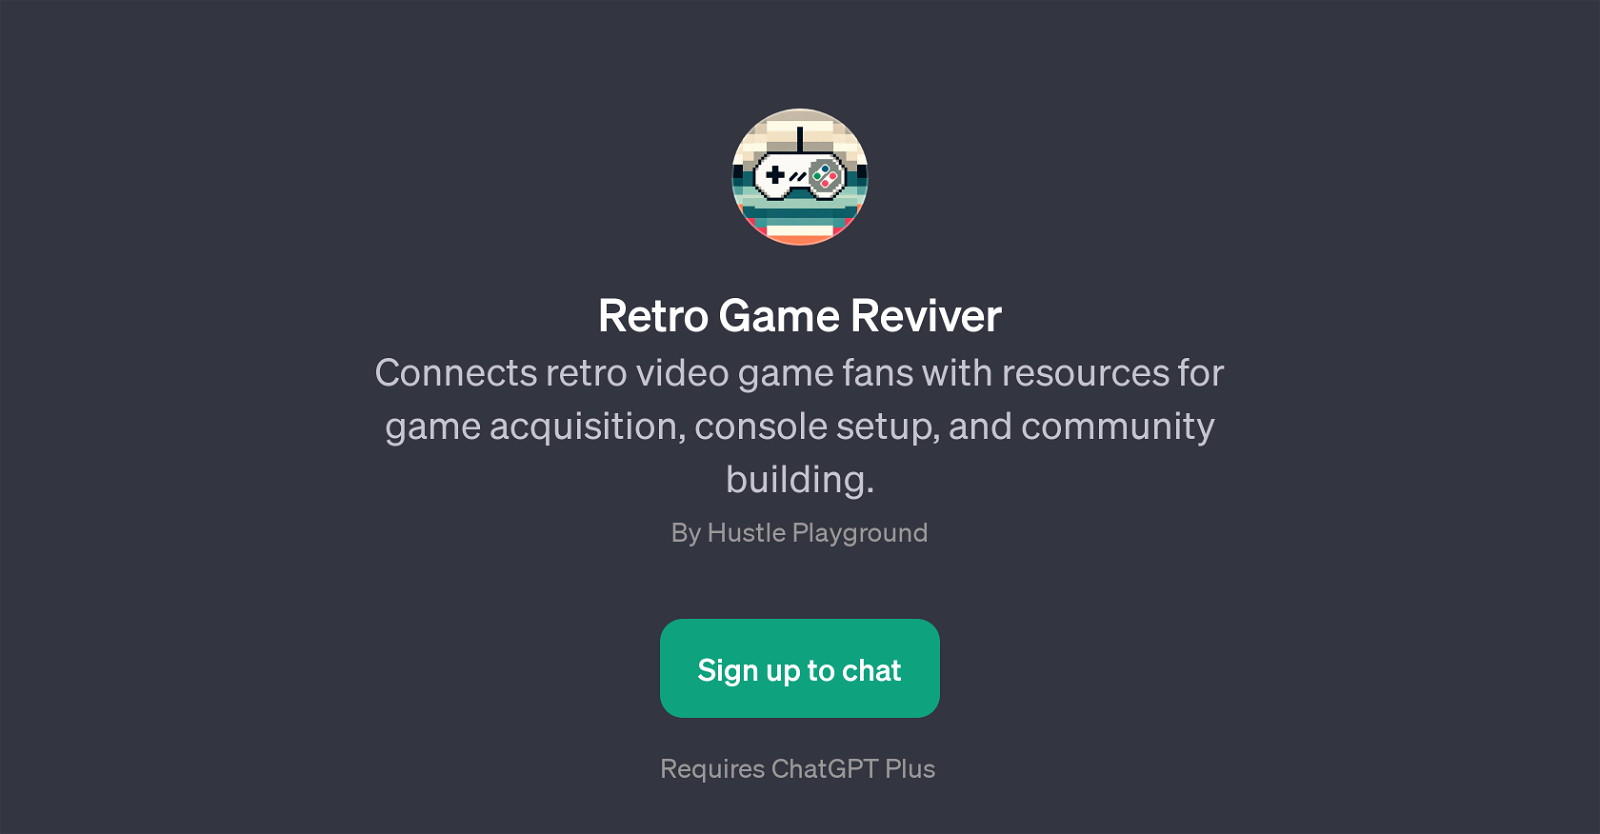 Retro Game Reviver website